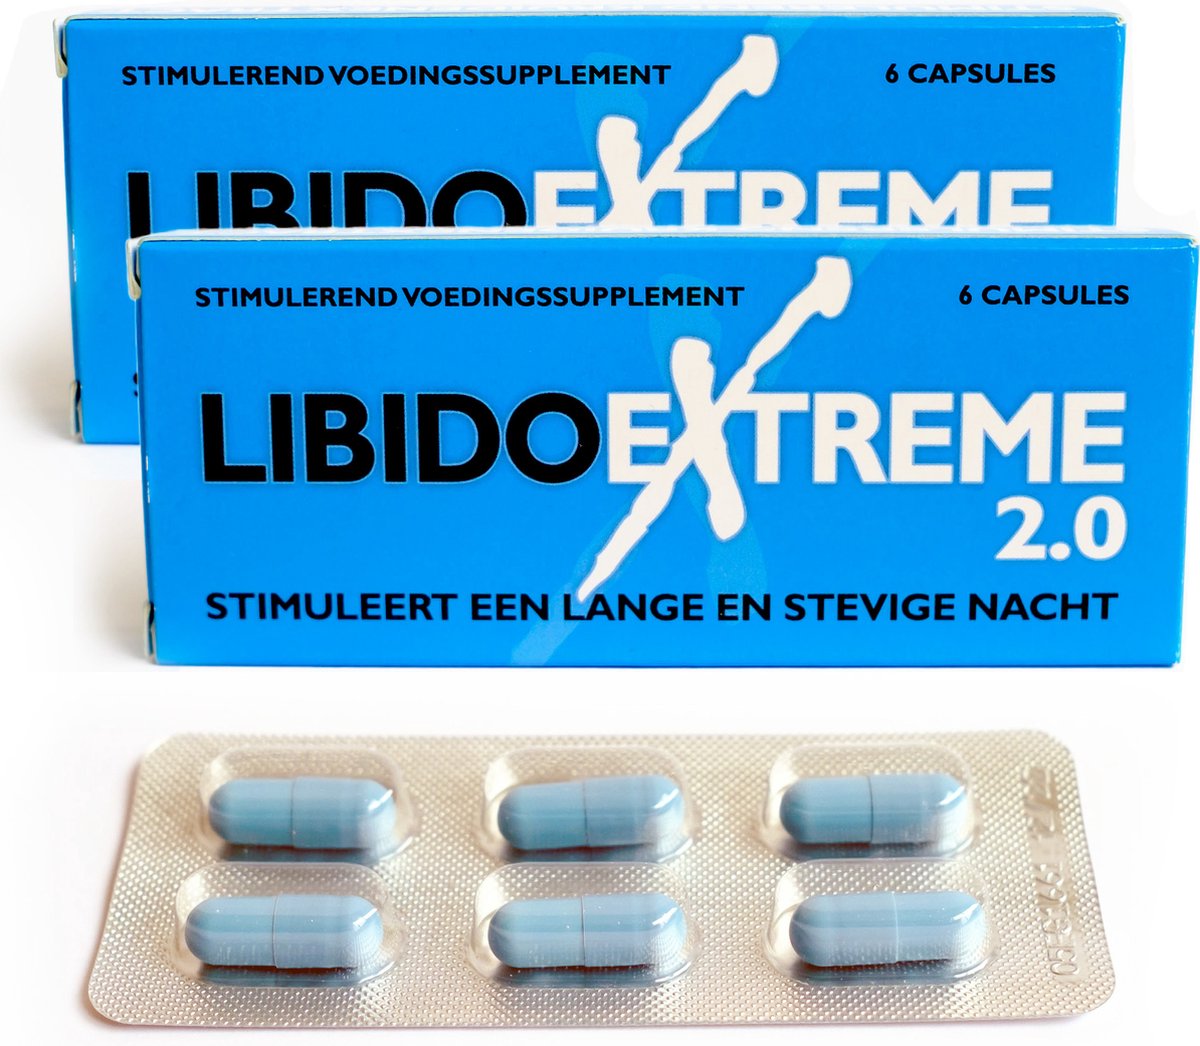 Libido Extreme 2.0 voordeel verpakking - 12 Erectiepillen voor mannen - Nieuwe en verbeterde versie #1 Erectiepil in Nederland - Discreet geleverd. - Alternatief voor: Viagra, Levitra, Cialis, Forte, Kamagra en Performance.